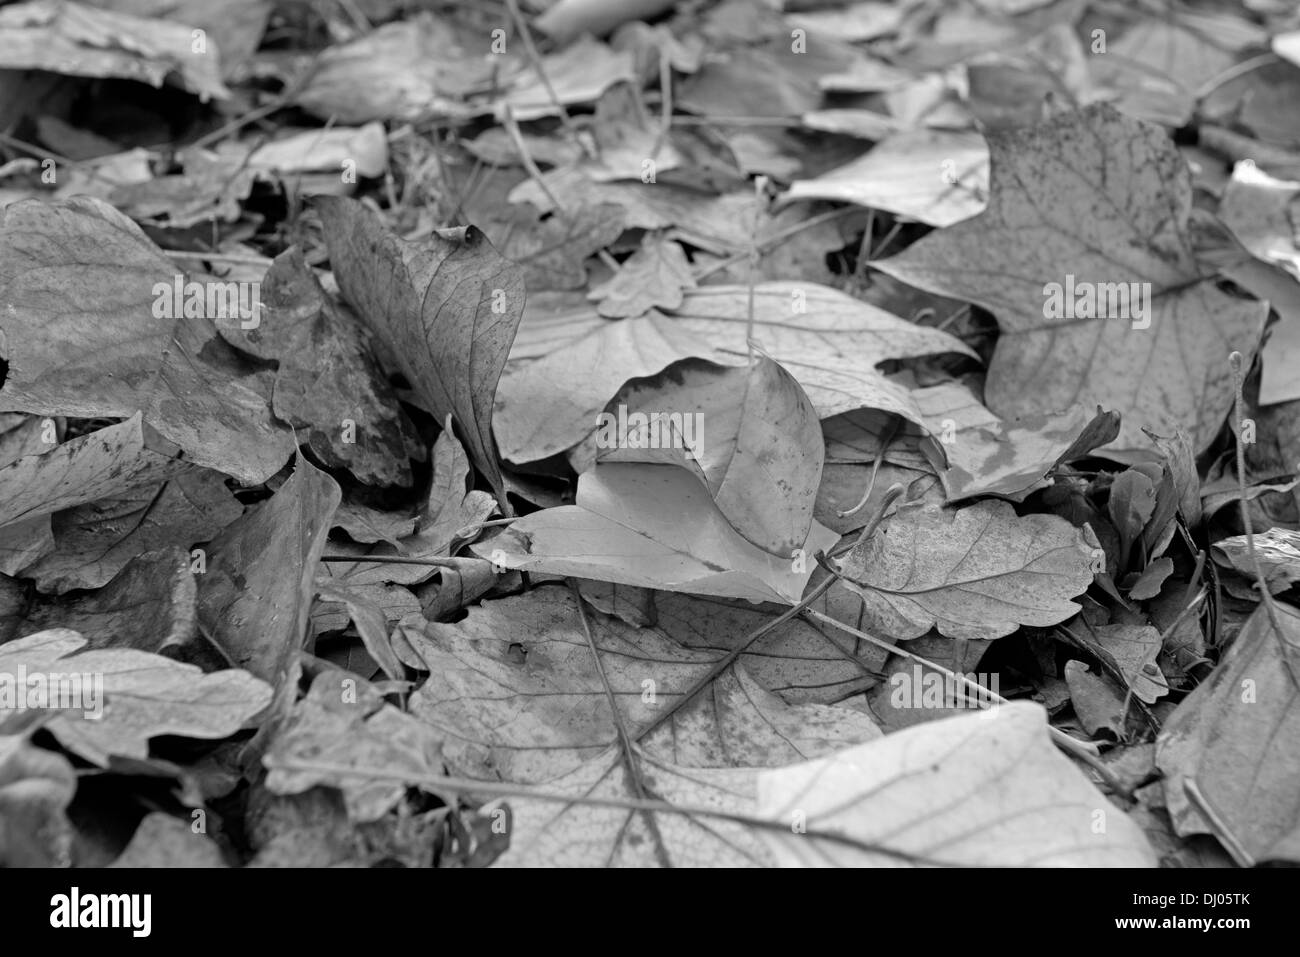 Jeter les feuilles d'automne sur le sol. Uk (noir et blanc) Banque D'Images